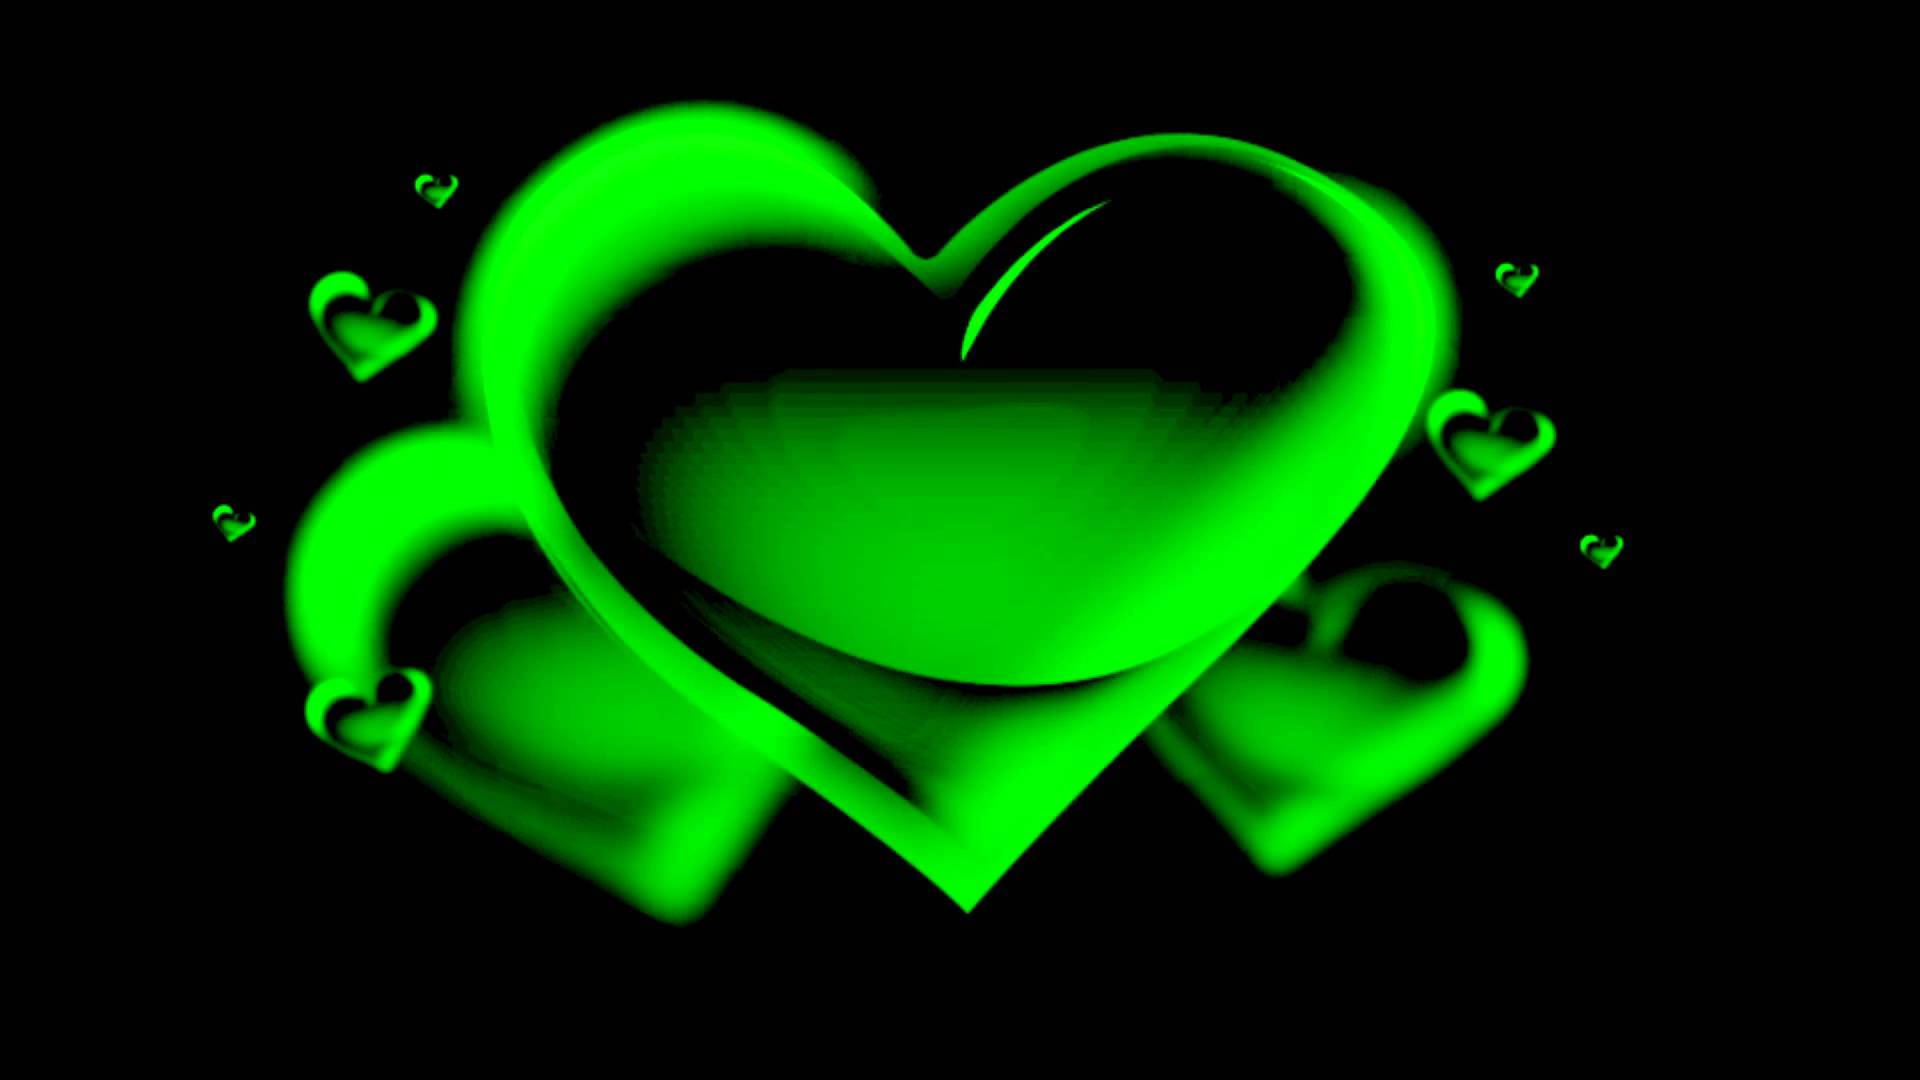 Green Heart Wallpaper